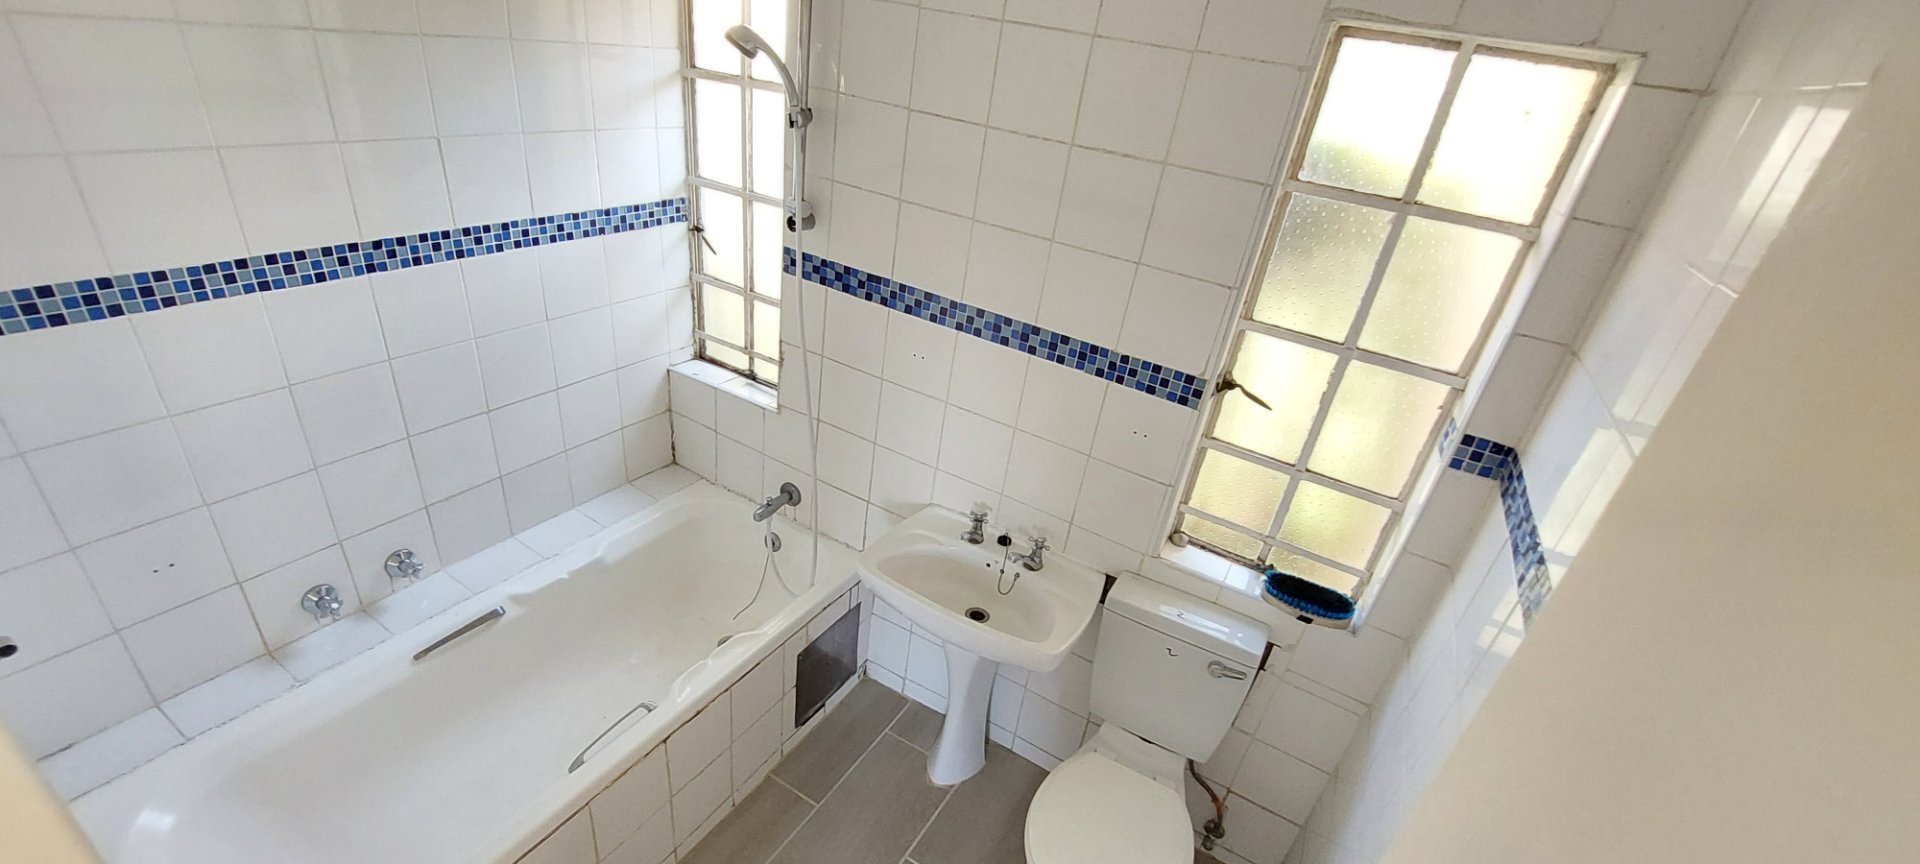 To Let 2 Bedroom Property for Rent in Ormonde Gauteng